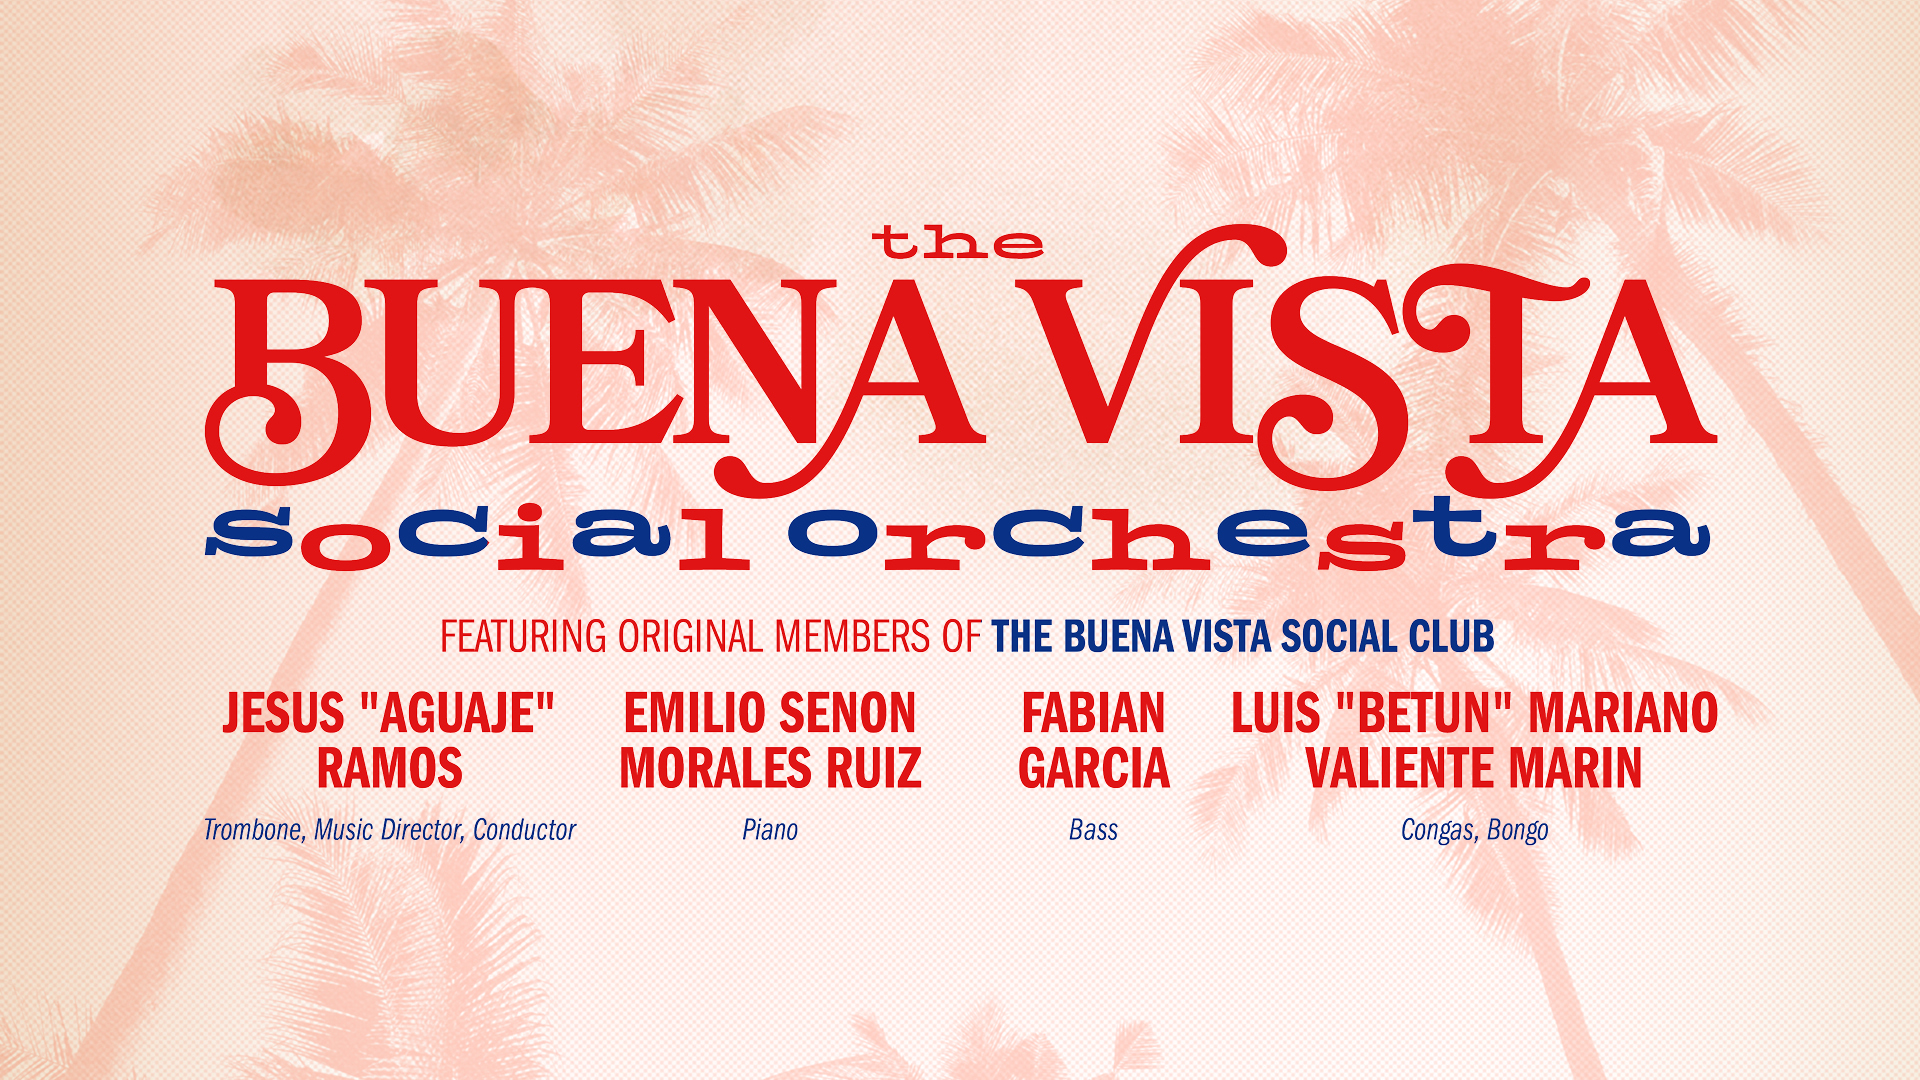 The Buena Vista Social Orchestra